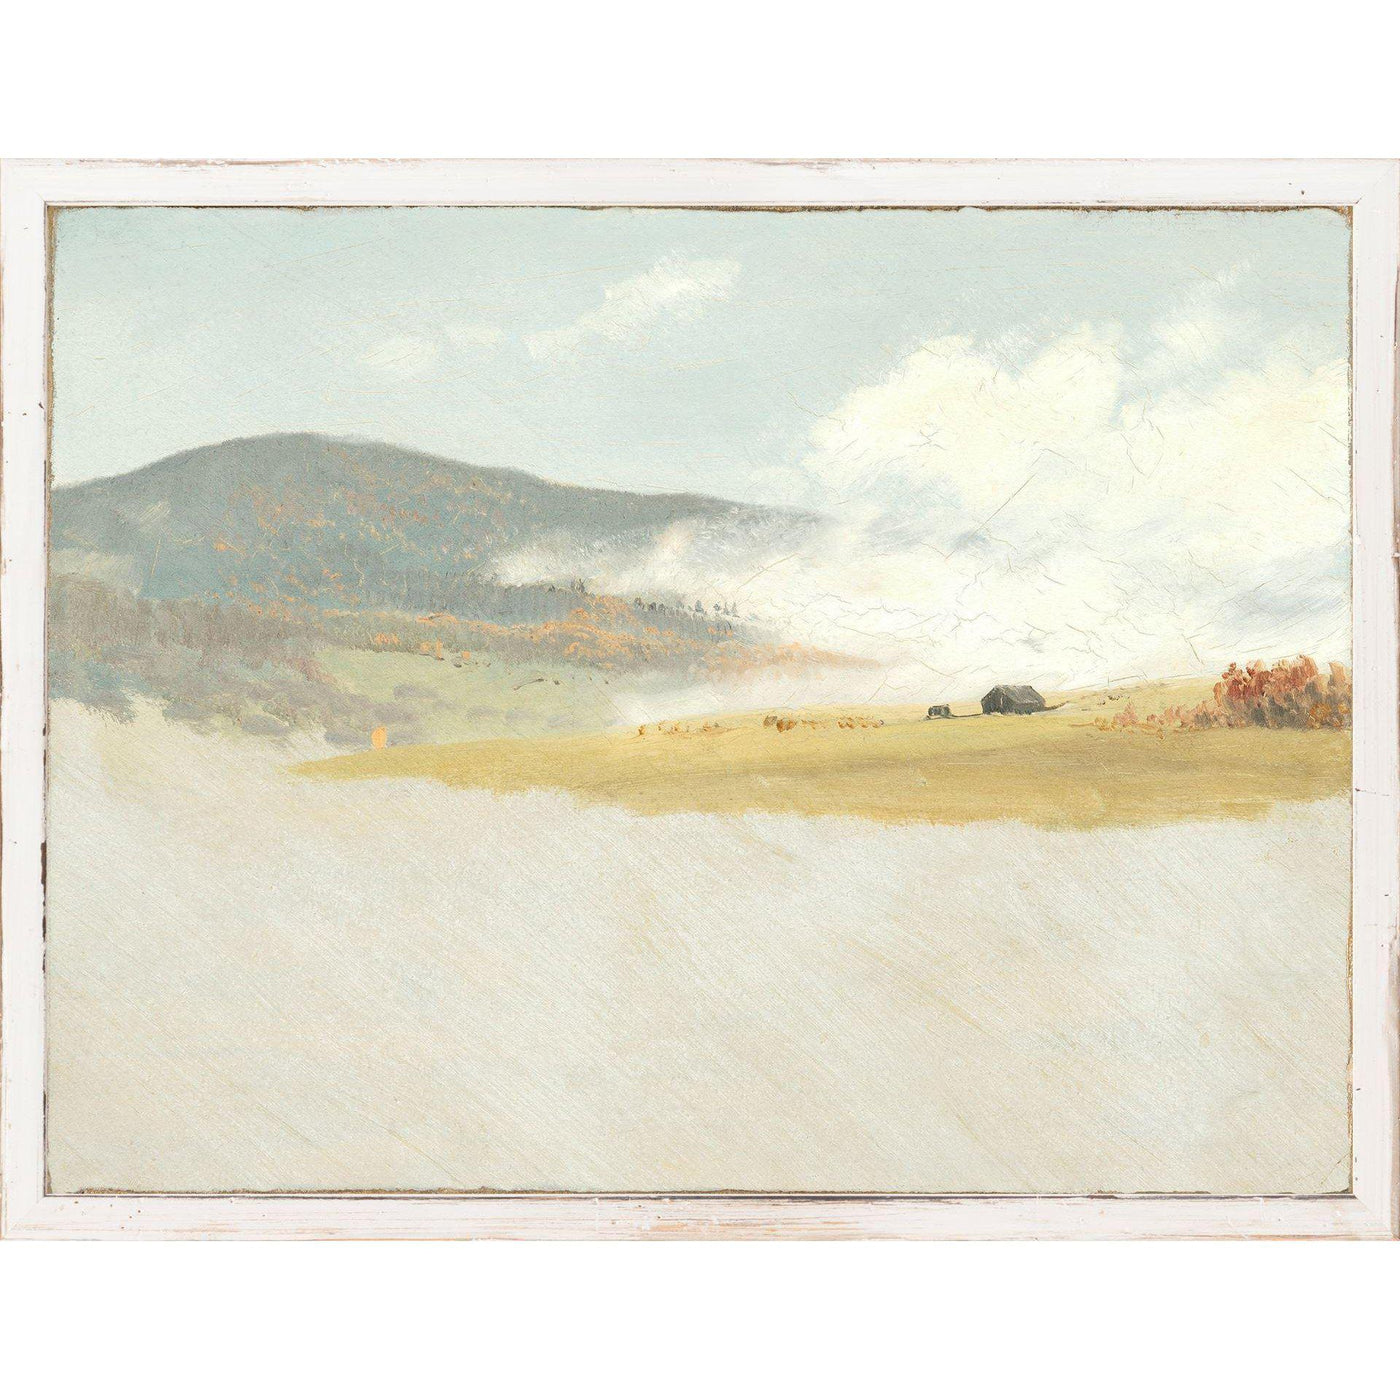 Petite Scapes - Hilly Landscape C. 1865-75